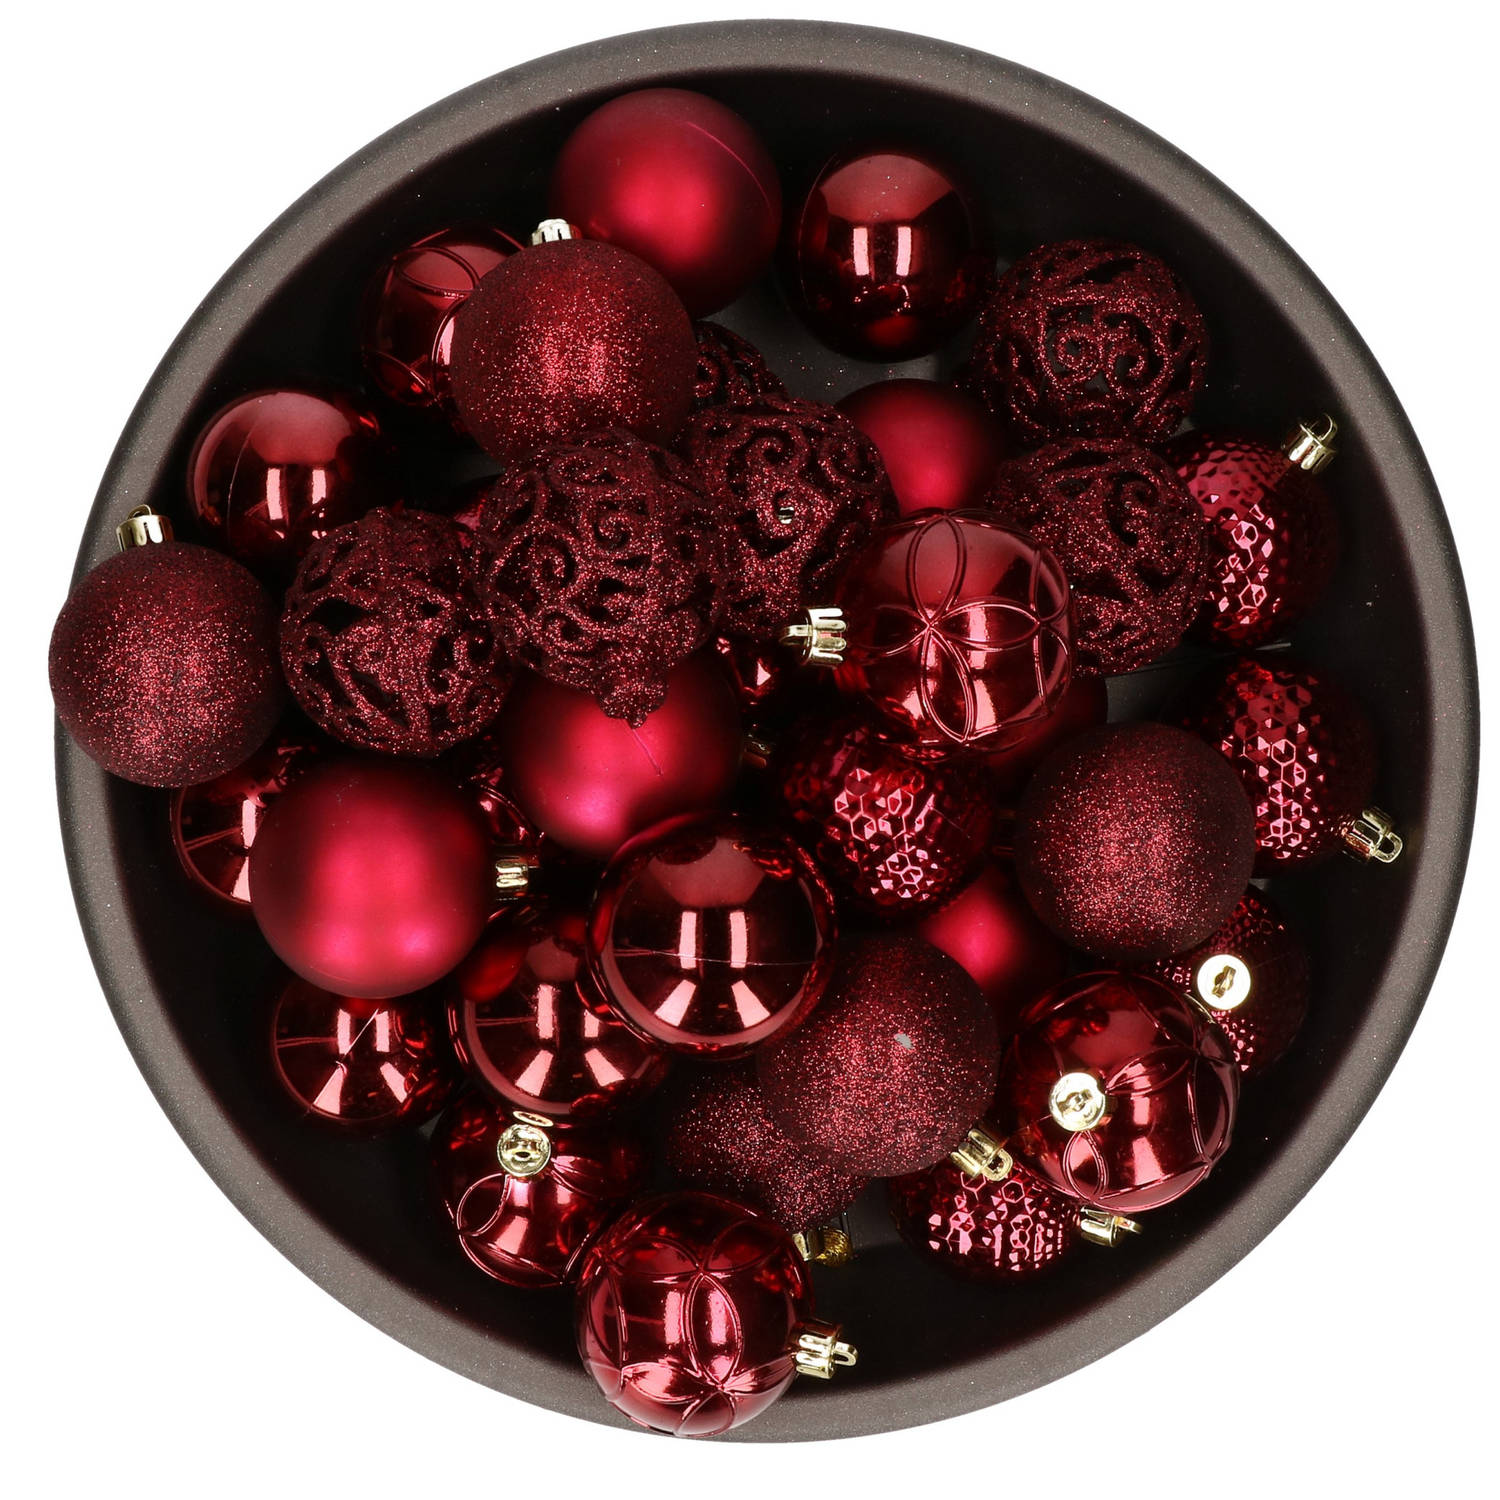 37x Stuks Kunststof Kerstballen Donkerrood (Oxblood) 6 Cm Glans-mat-glitter Mix Kerstbal